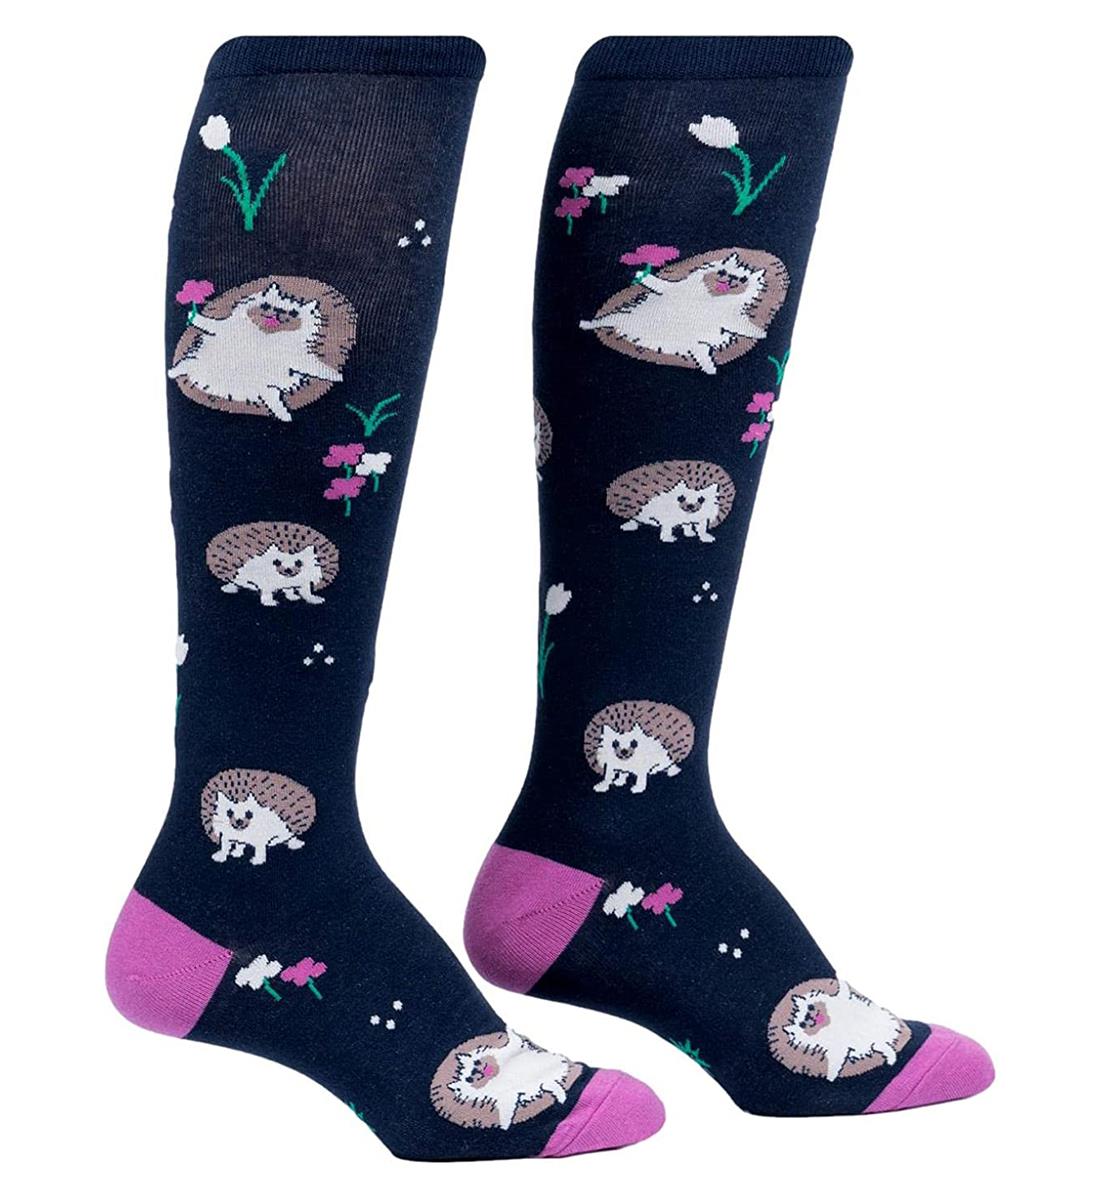 SOCK it to me Unisex Knee High Socks (F0588),Rollin' with my Hedgehog - Rollin' with my Hedgehog,One Size